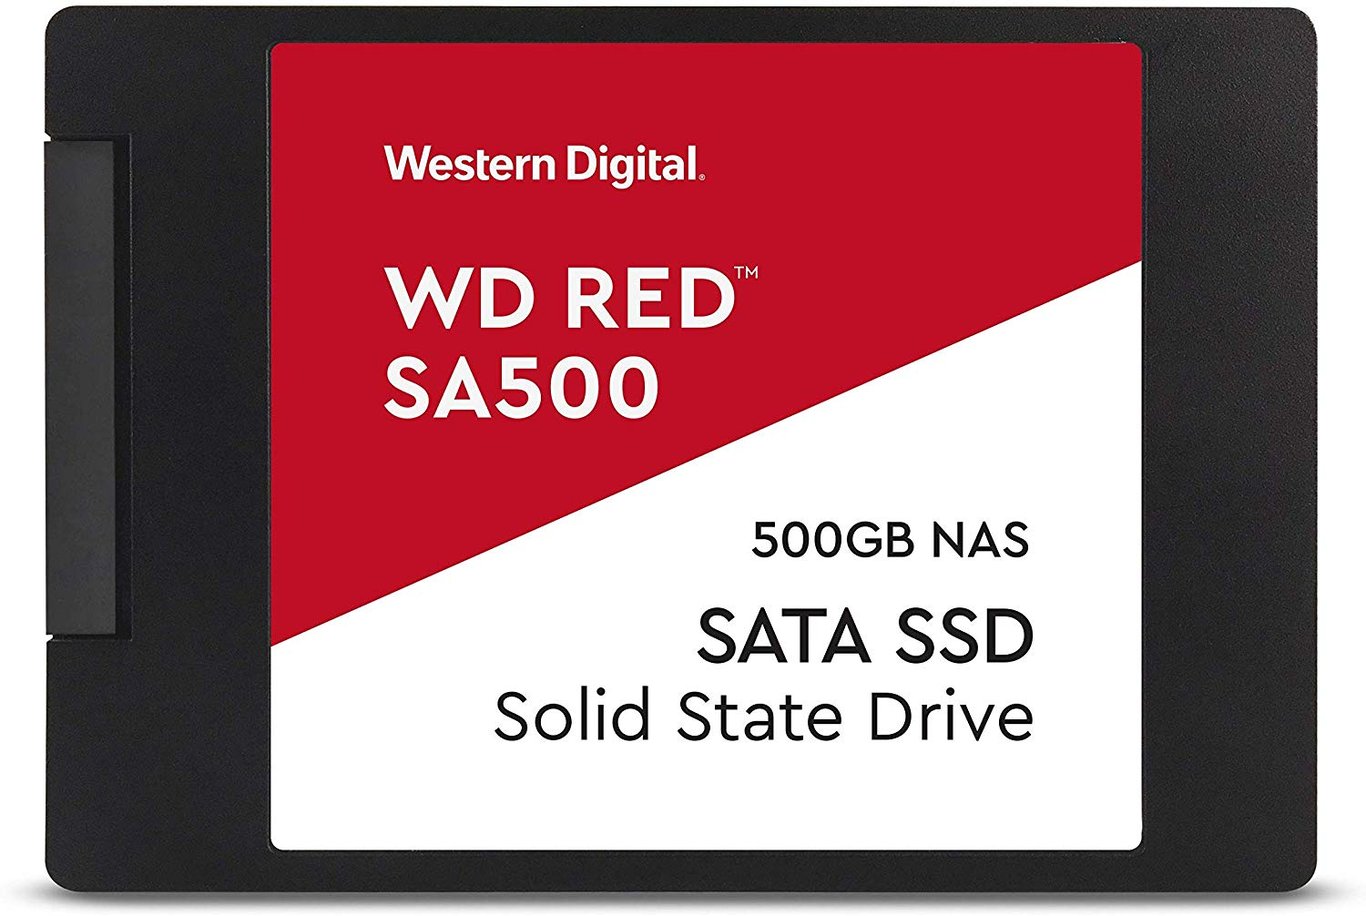 WD Red 500GB NAS 3D TLC SATA III SSD